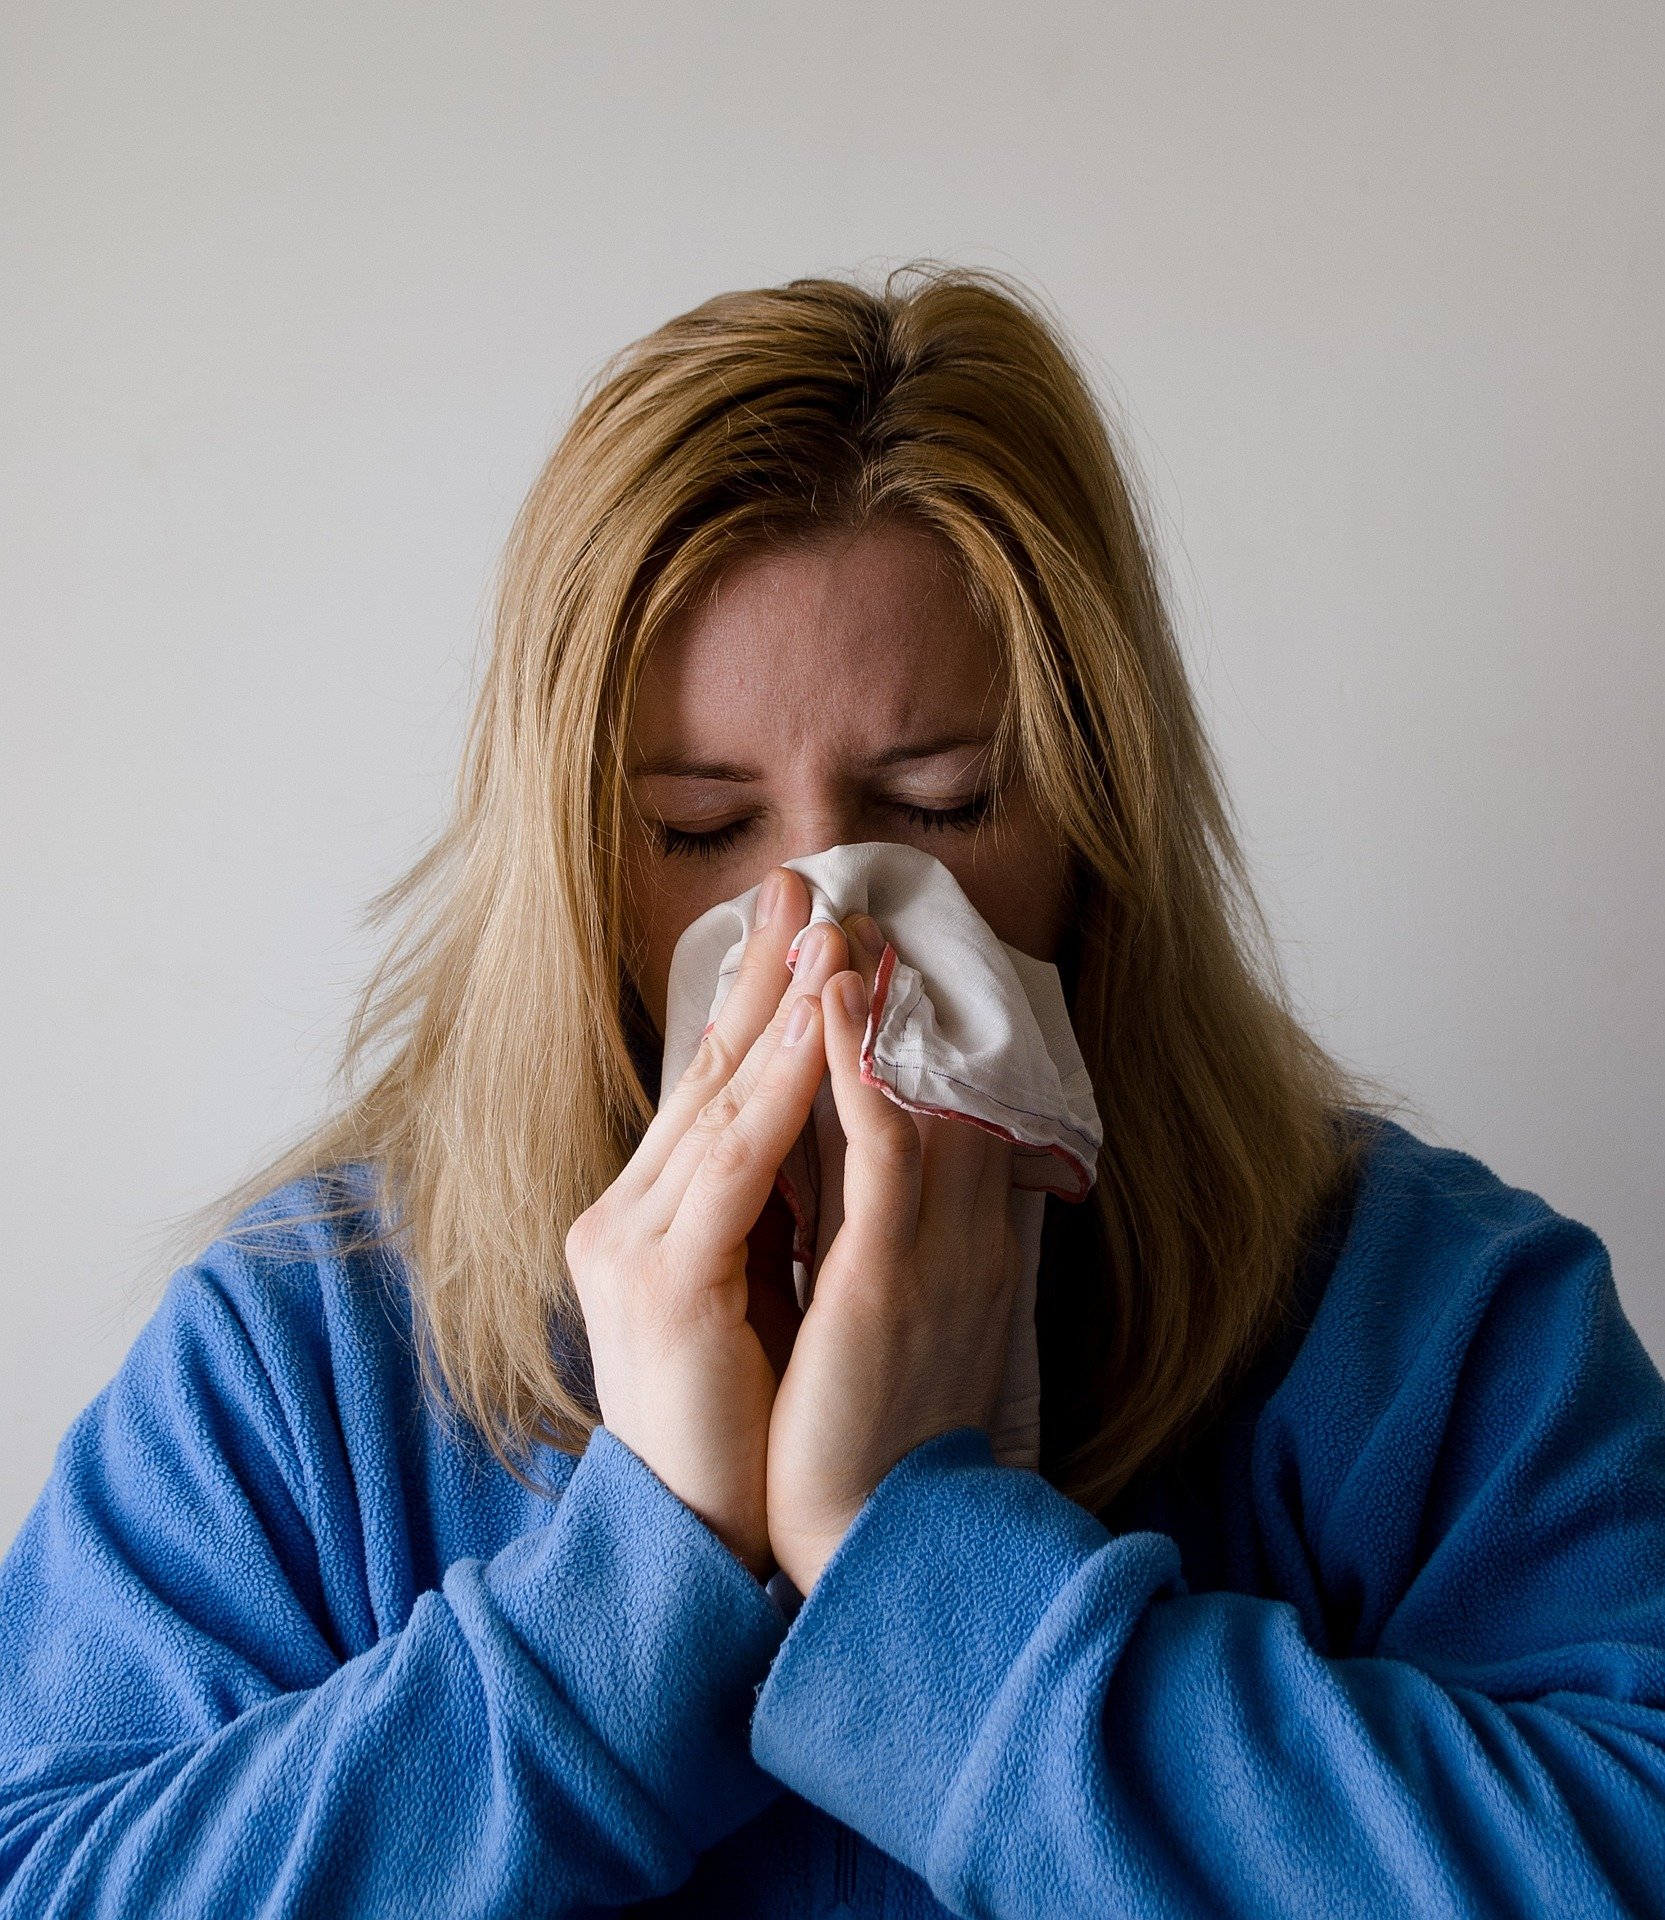 Mujer con resfriado se sopla la nariz. Fuente: Pixabay